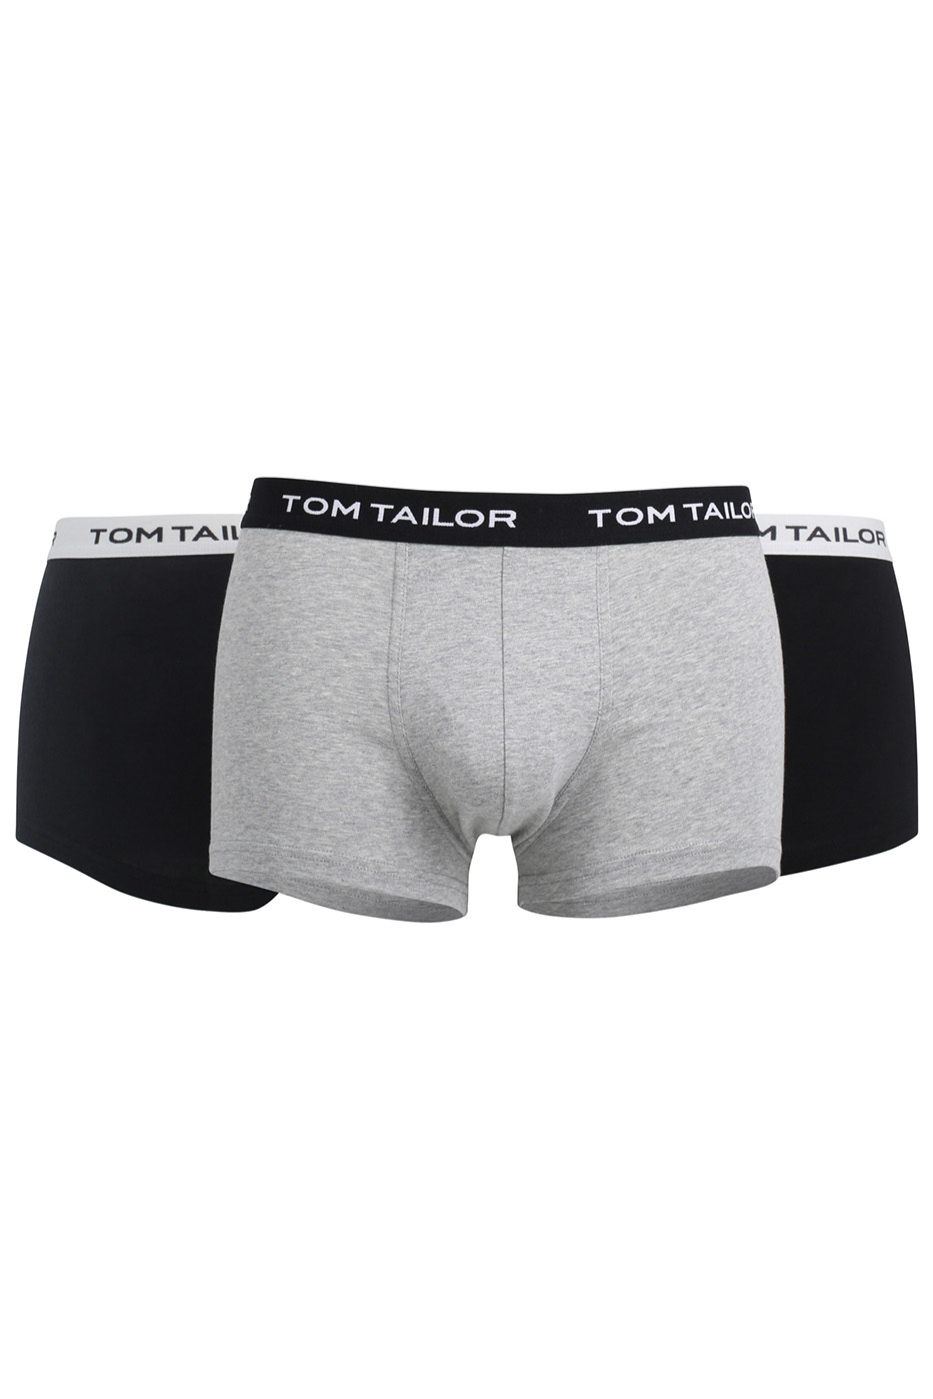 Trunks TOM TAILOR 70162-6061-9300